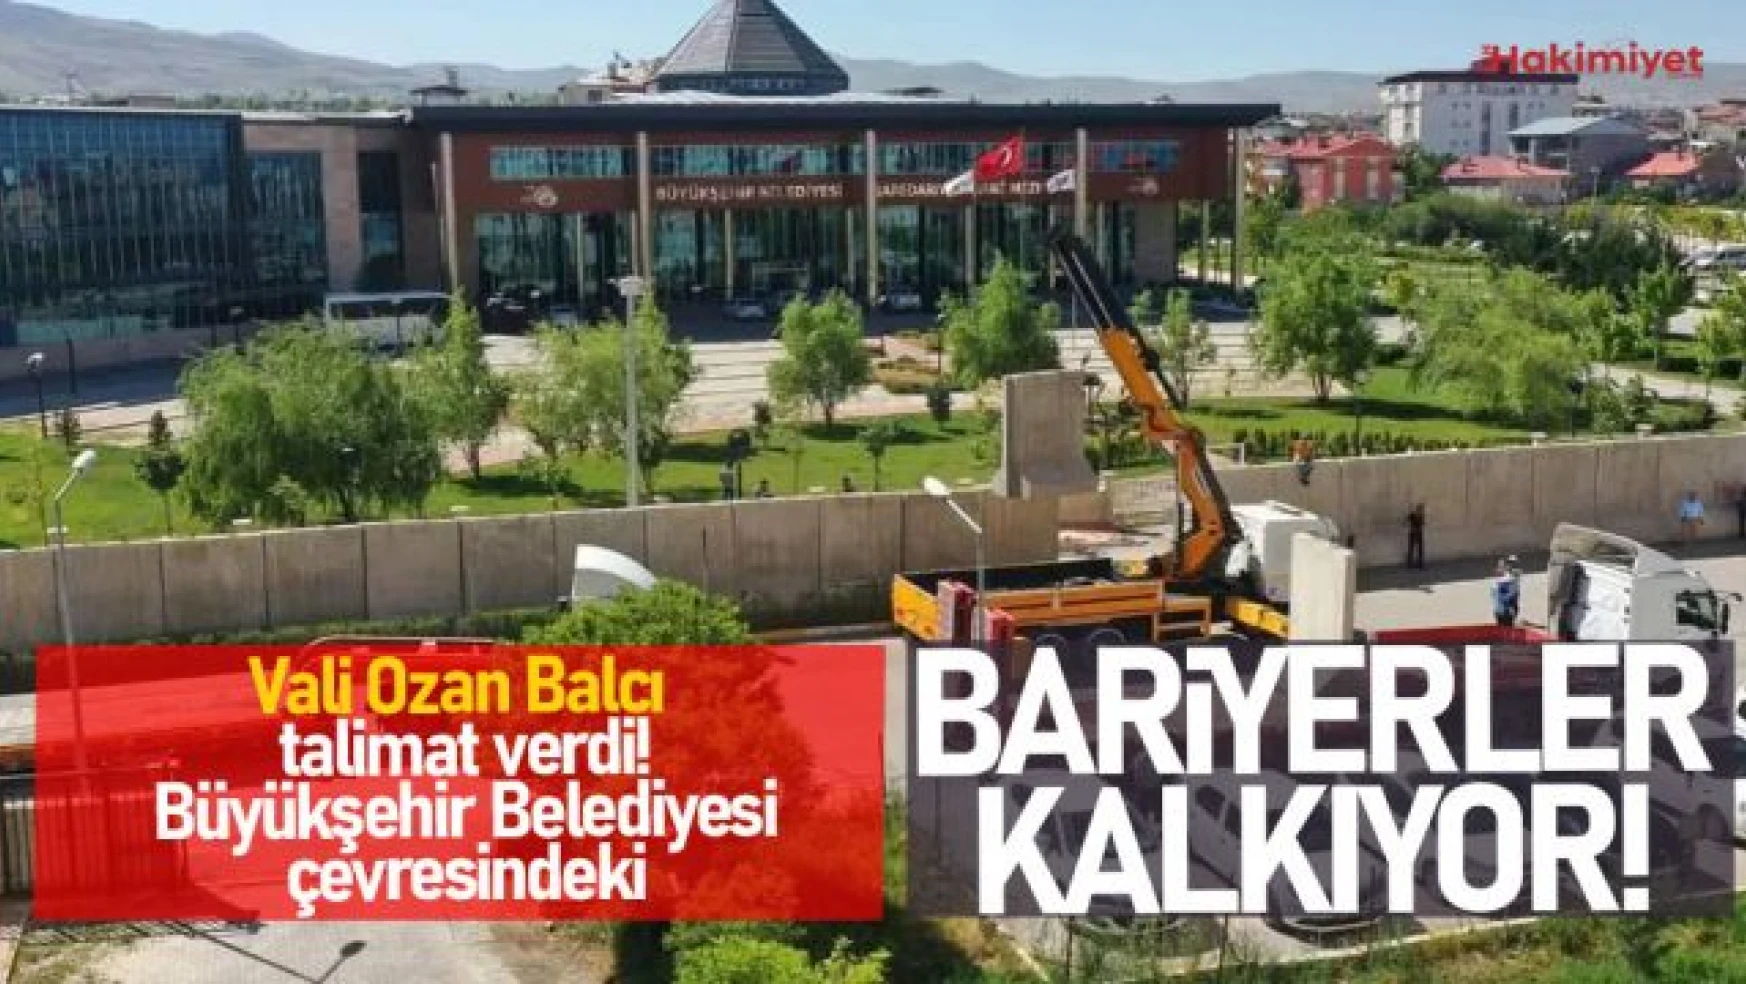 Van Büyükşehir Belediyesi'nin etrafındaki beton bariyerler kaldırılıyor!